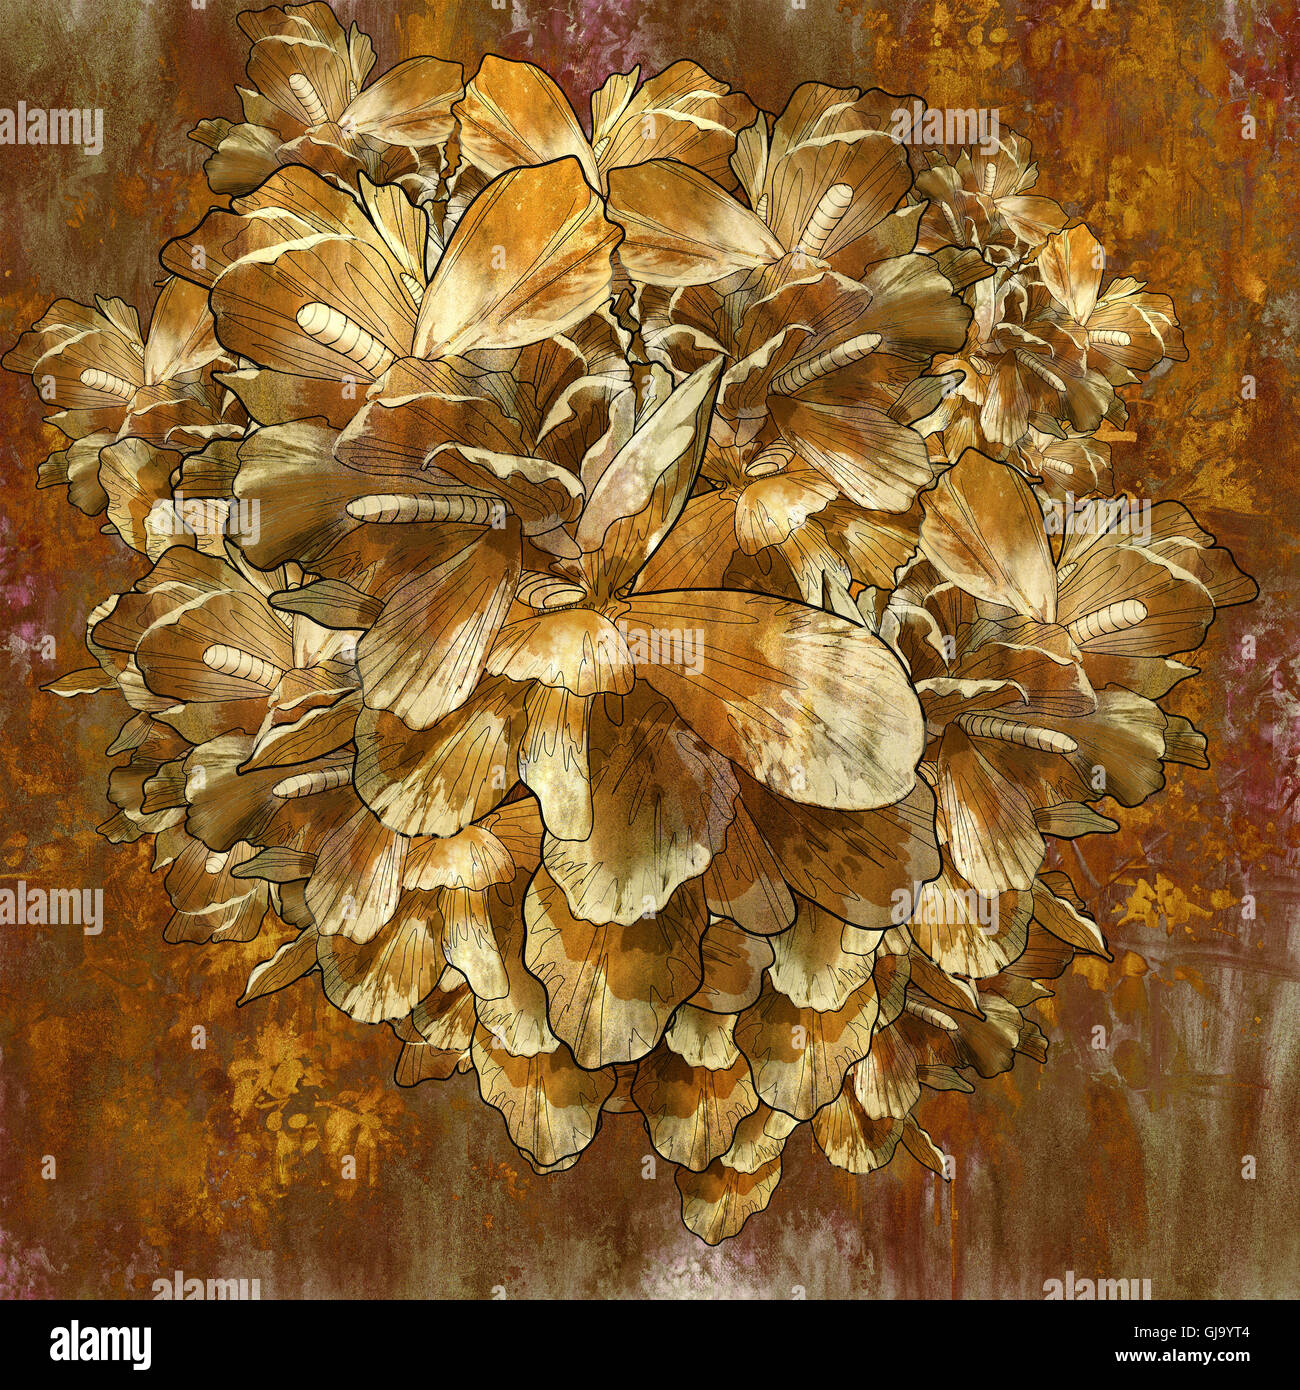 Abstract fiore d'oro con texture grunge in olio stile della pittura, illustrazione Foto Stock